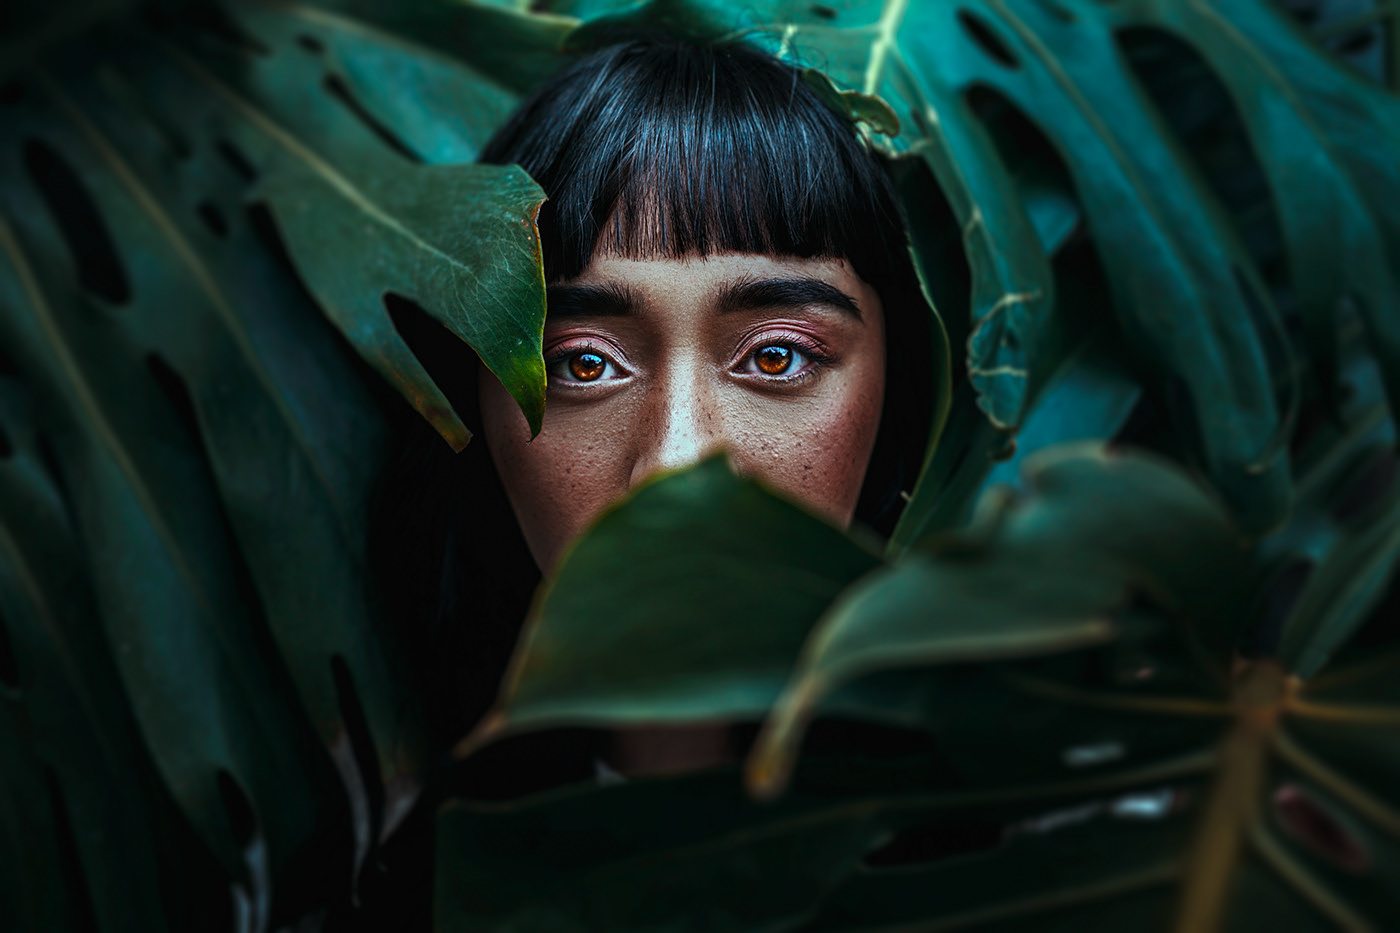 portrait photography orange eyes by mikeila borgia